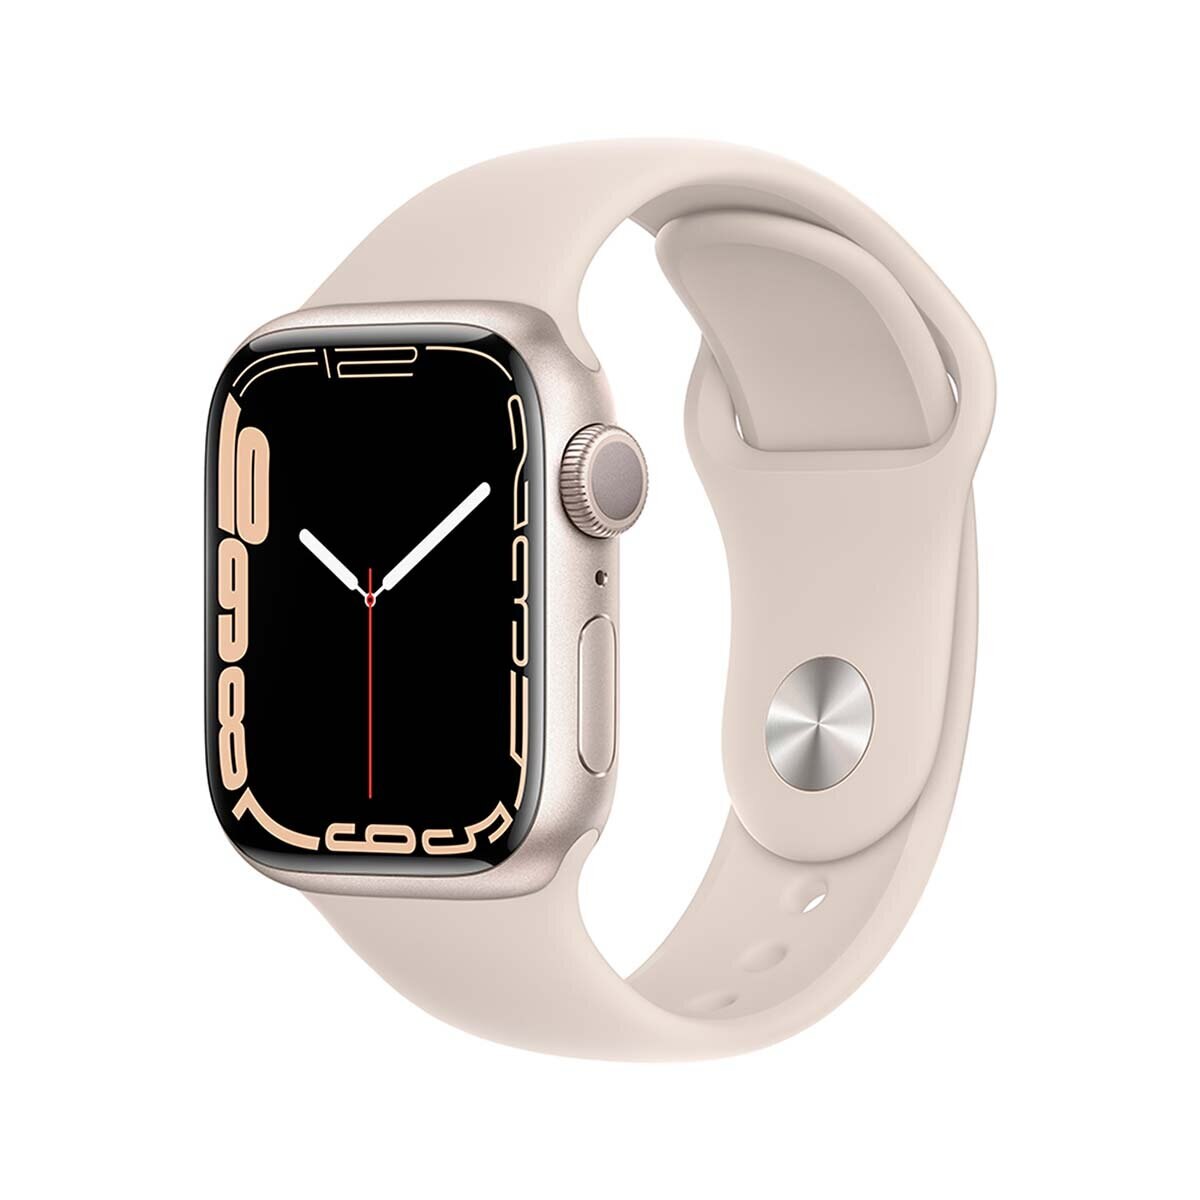 Apple Watch S7 (GPS) Caja de aluminio blanco estrella 41mm con correa deportiva blanco estrella